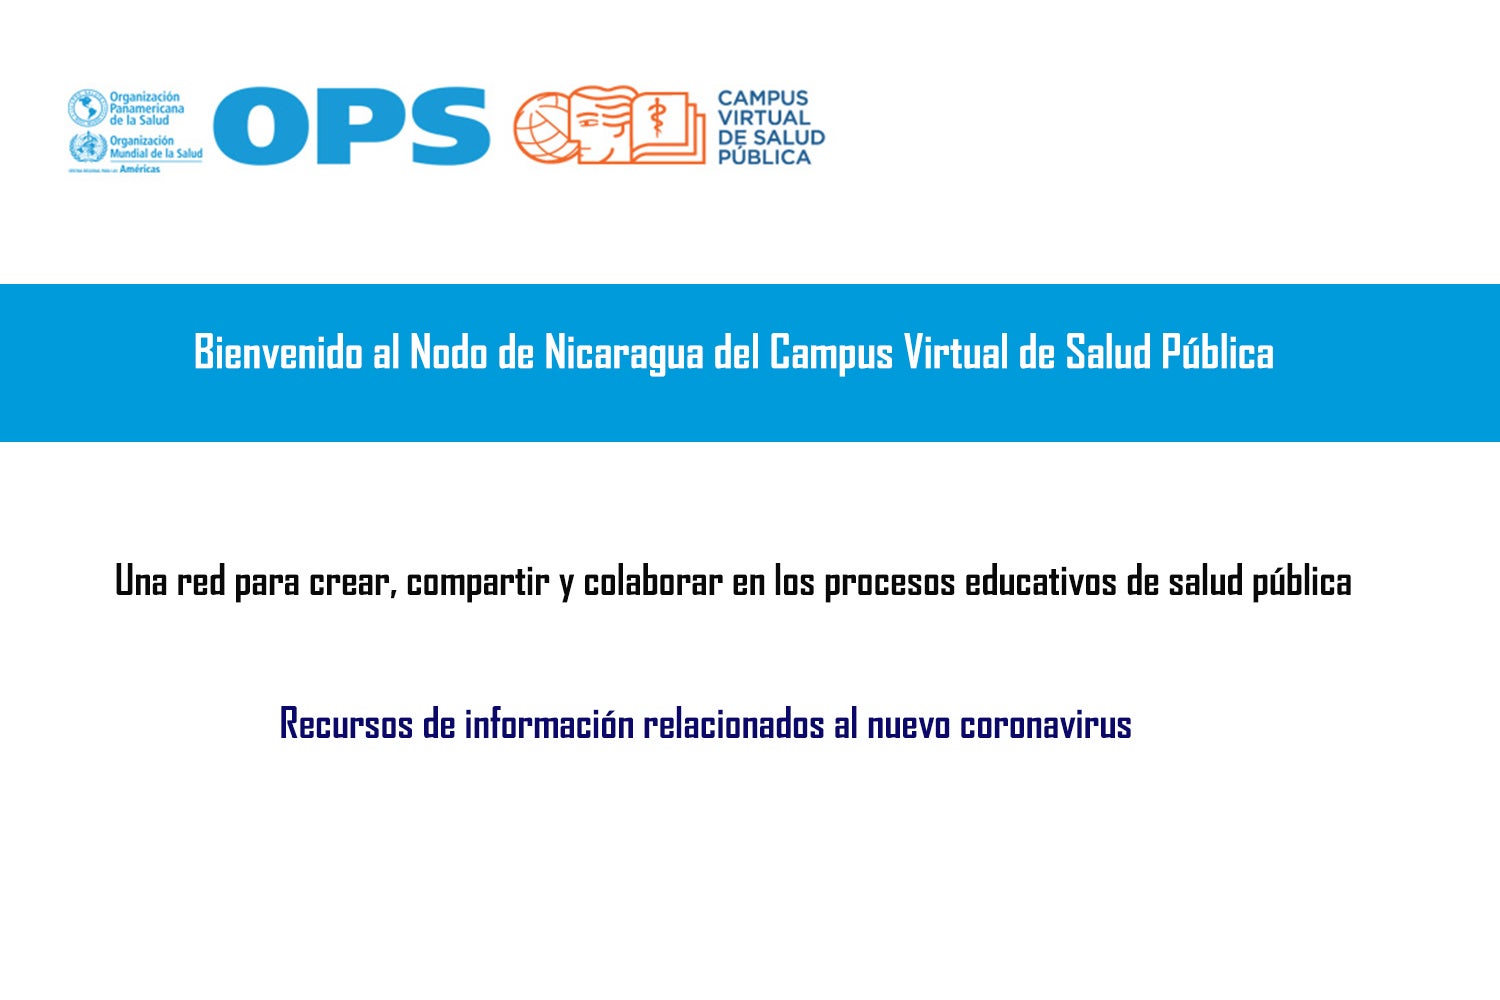 Nodo Campus Virtual de Salud Pública Nicaragua